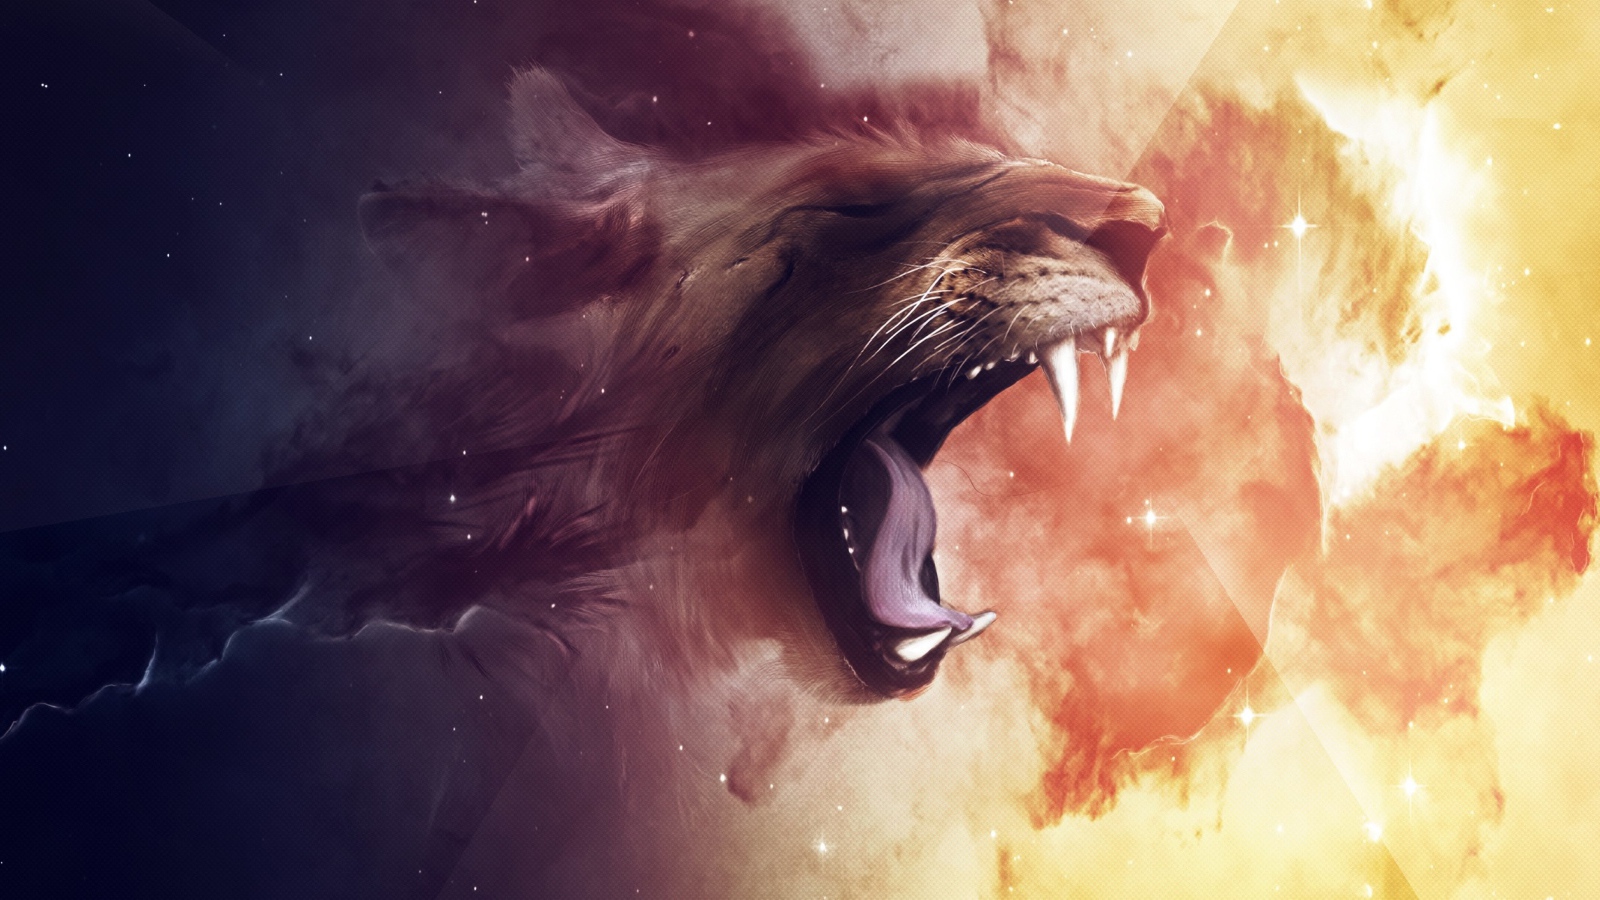 Нарисованный лев зевает на огненном фоне